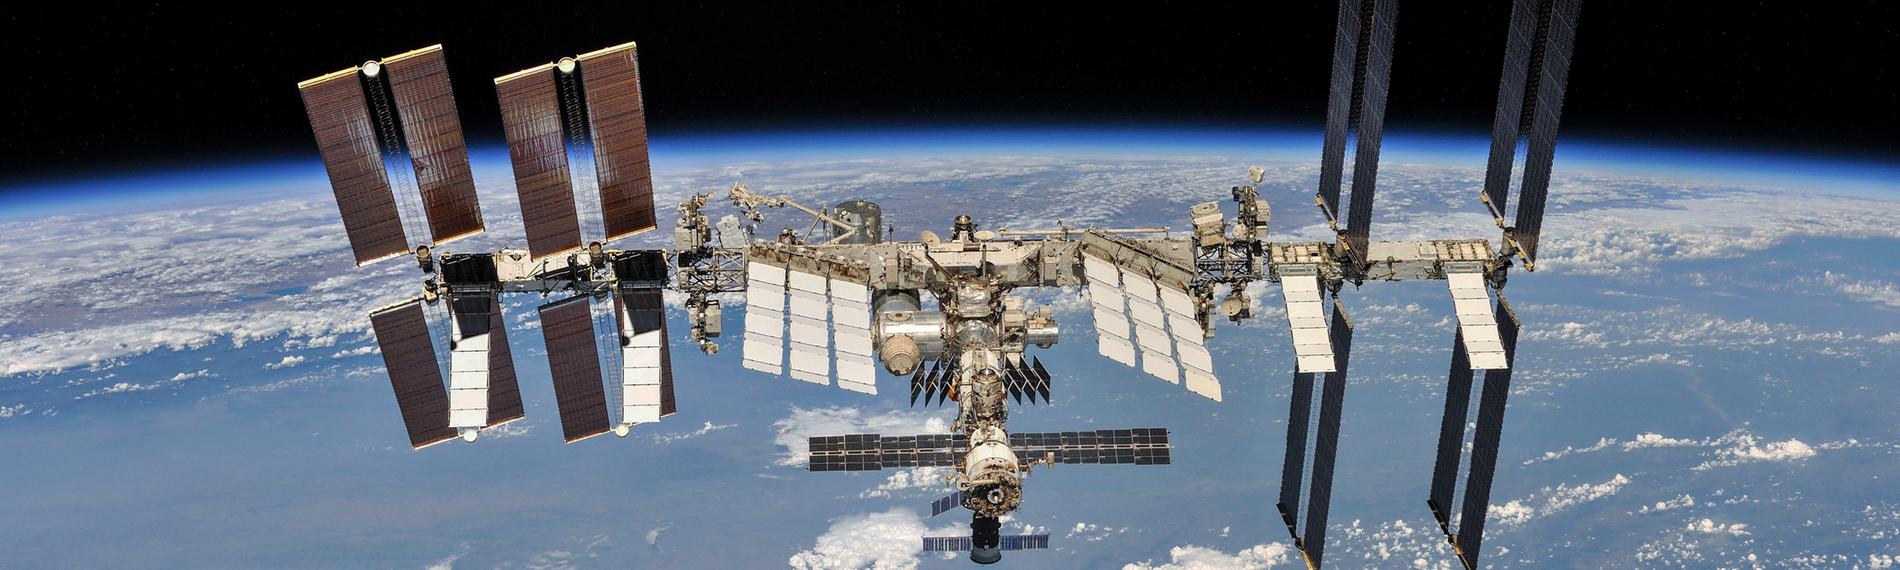 ISS - Aufnahme der Weltraumstation